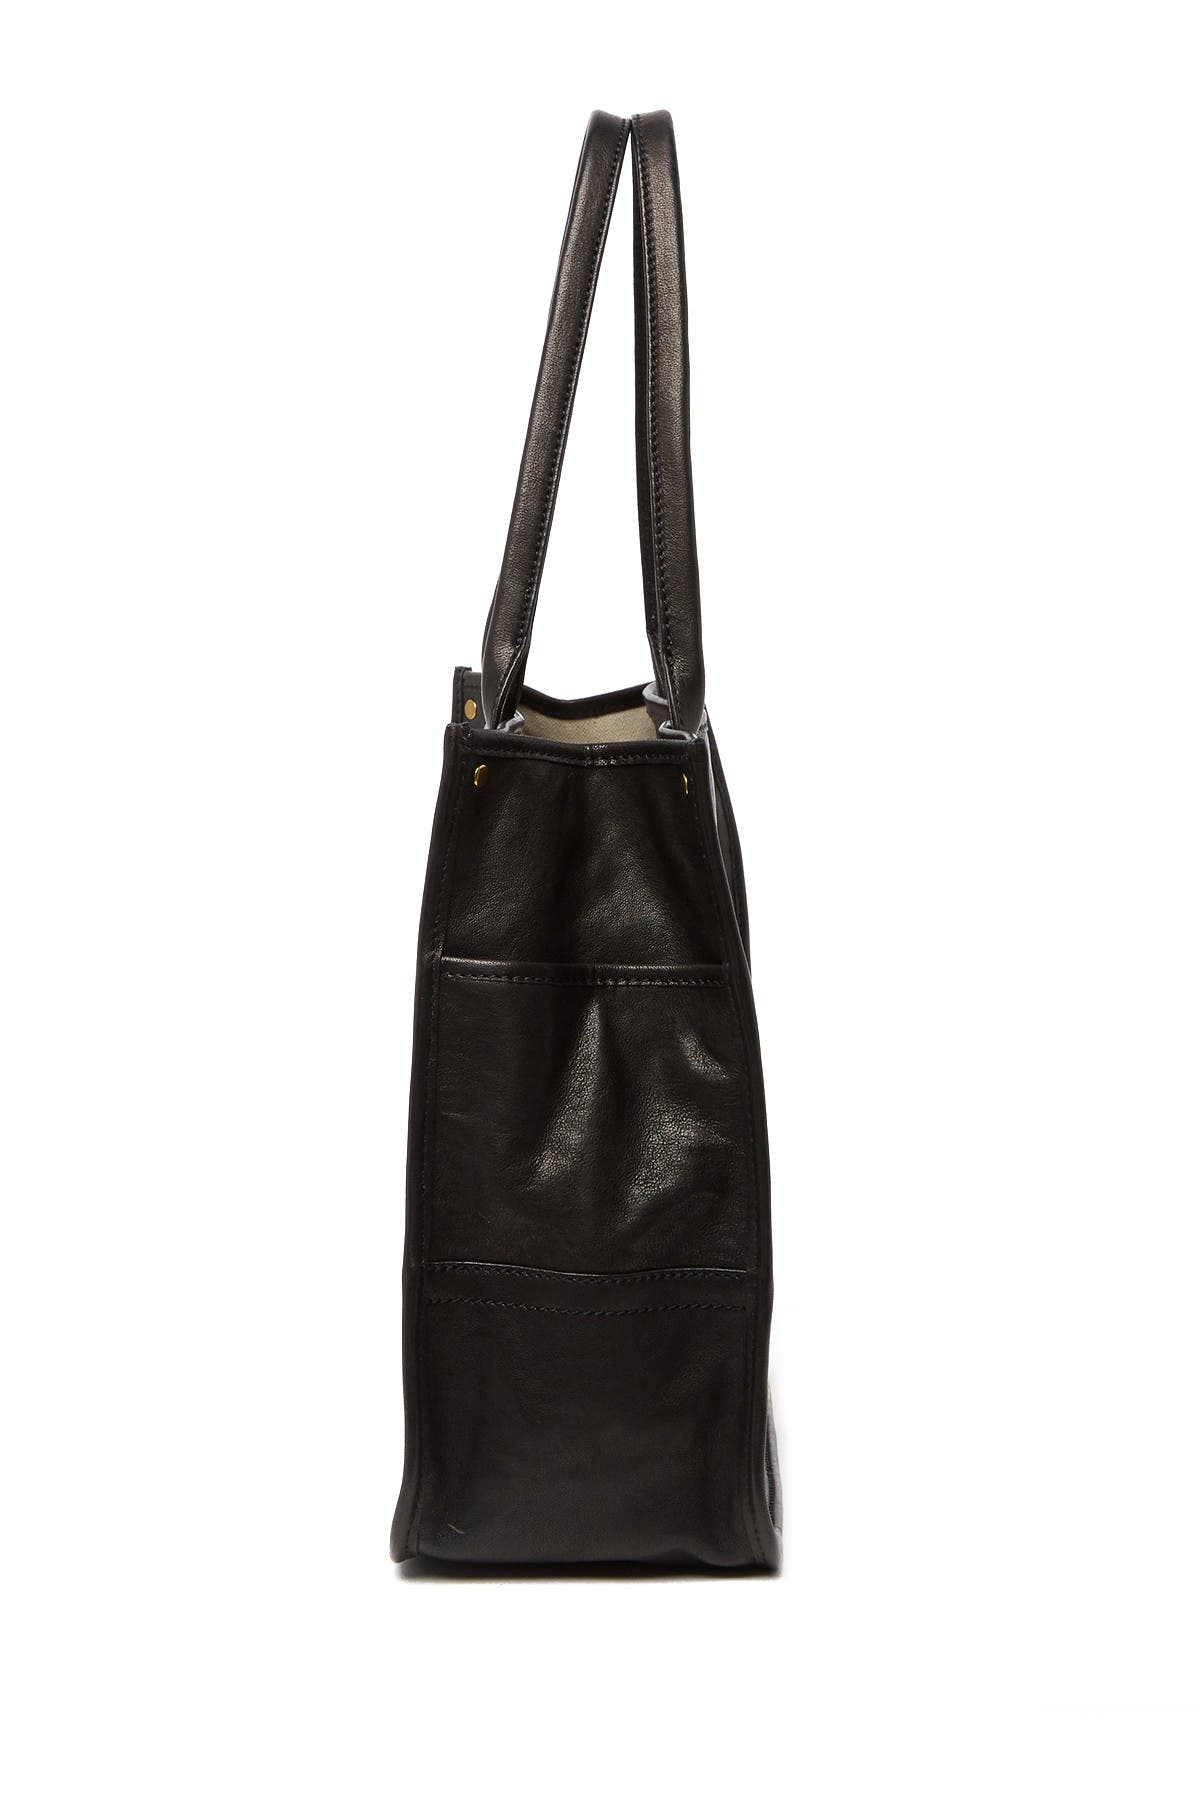 Frye | Madison Shopper Leather Tote Bag | Nordstrom Rack